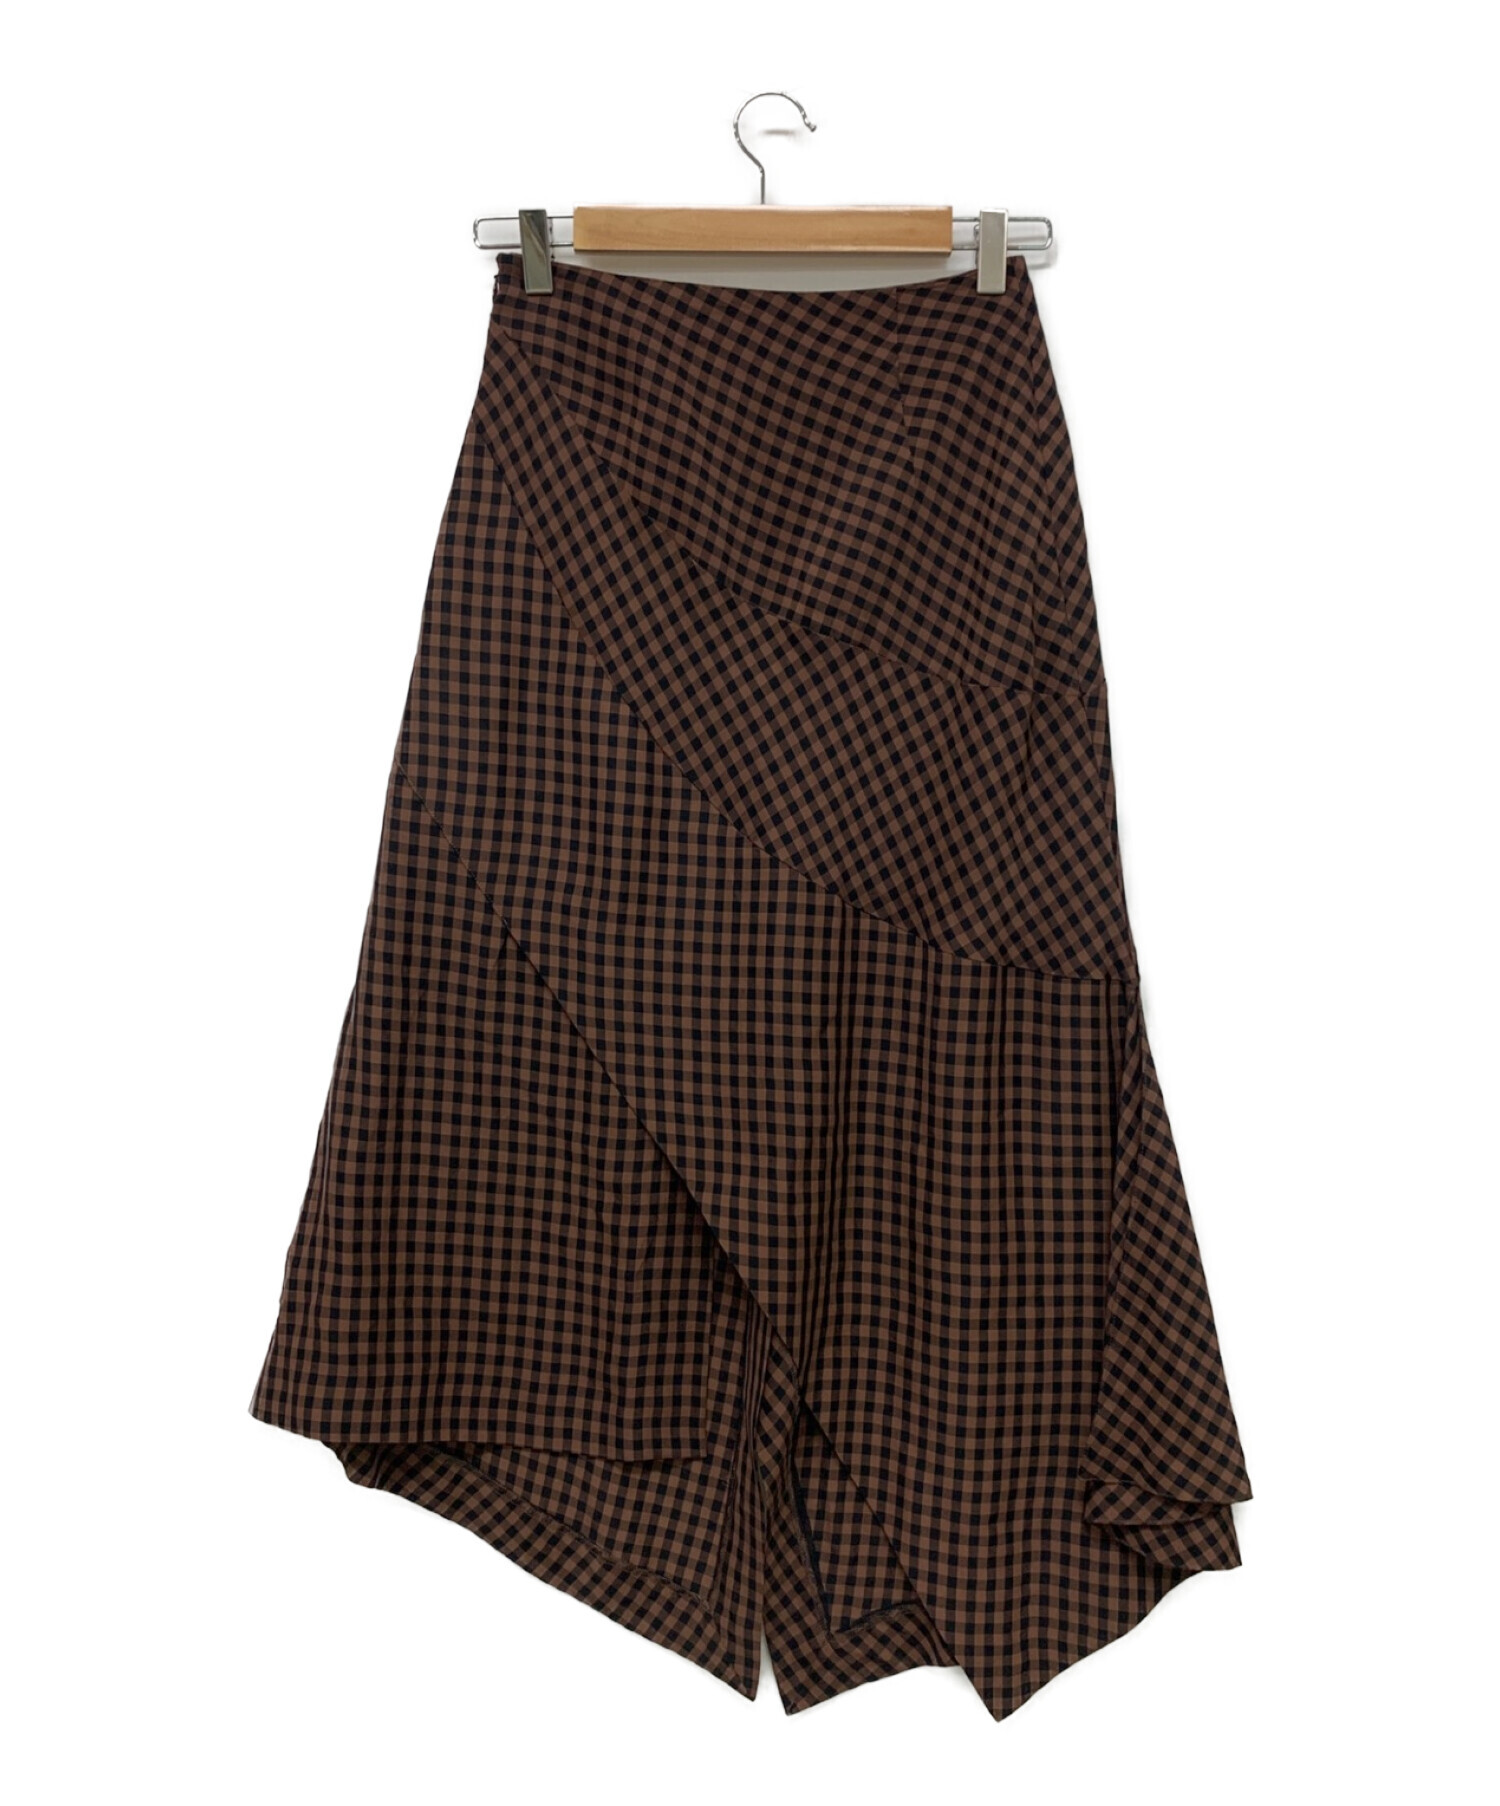 アキラナカ akiranaka スカート サイズ1スカート - fulfillmentcentre